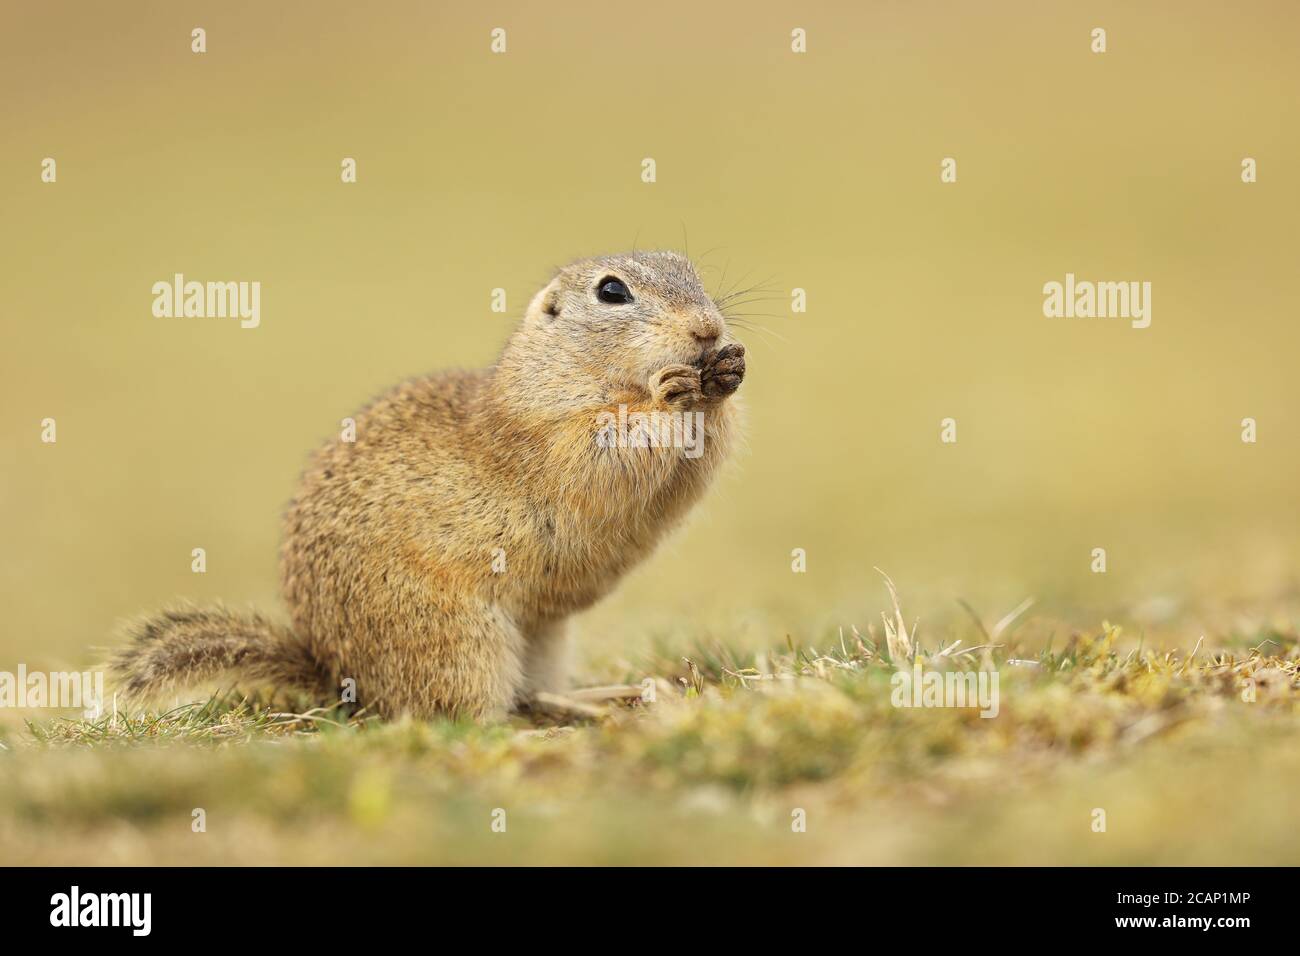 European Ground Squirrel, Spermophilus citellus, sitting in the grass during summer, detail animal portrait, Czech Republic Stock Photo